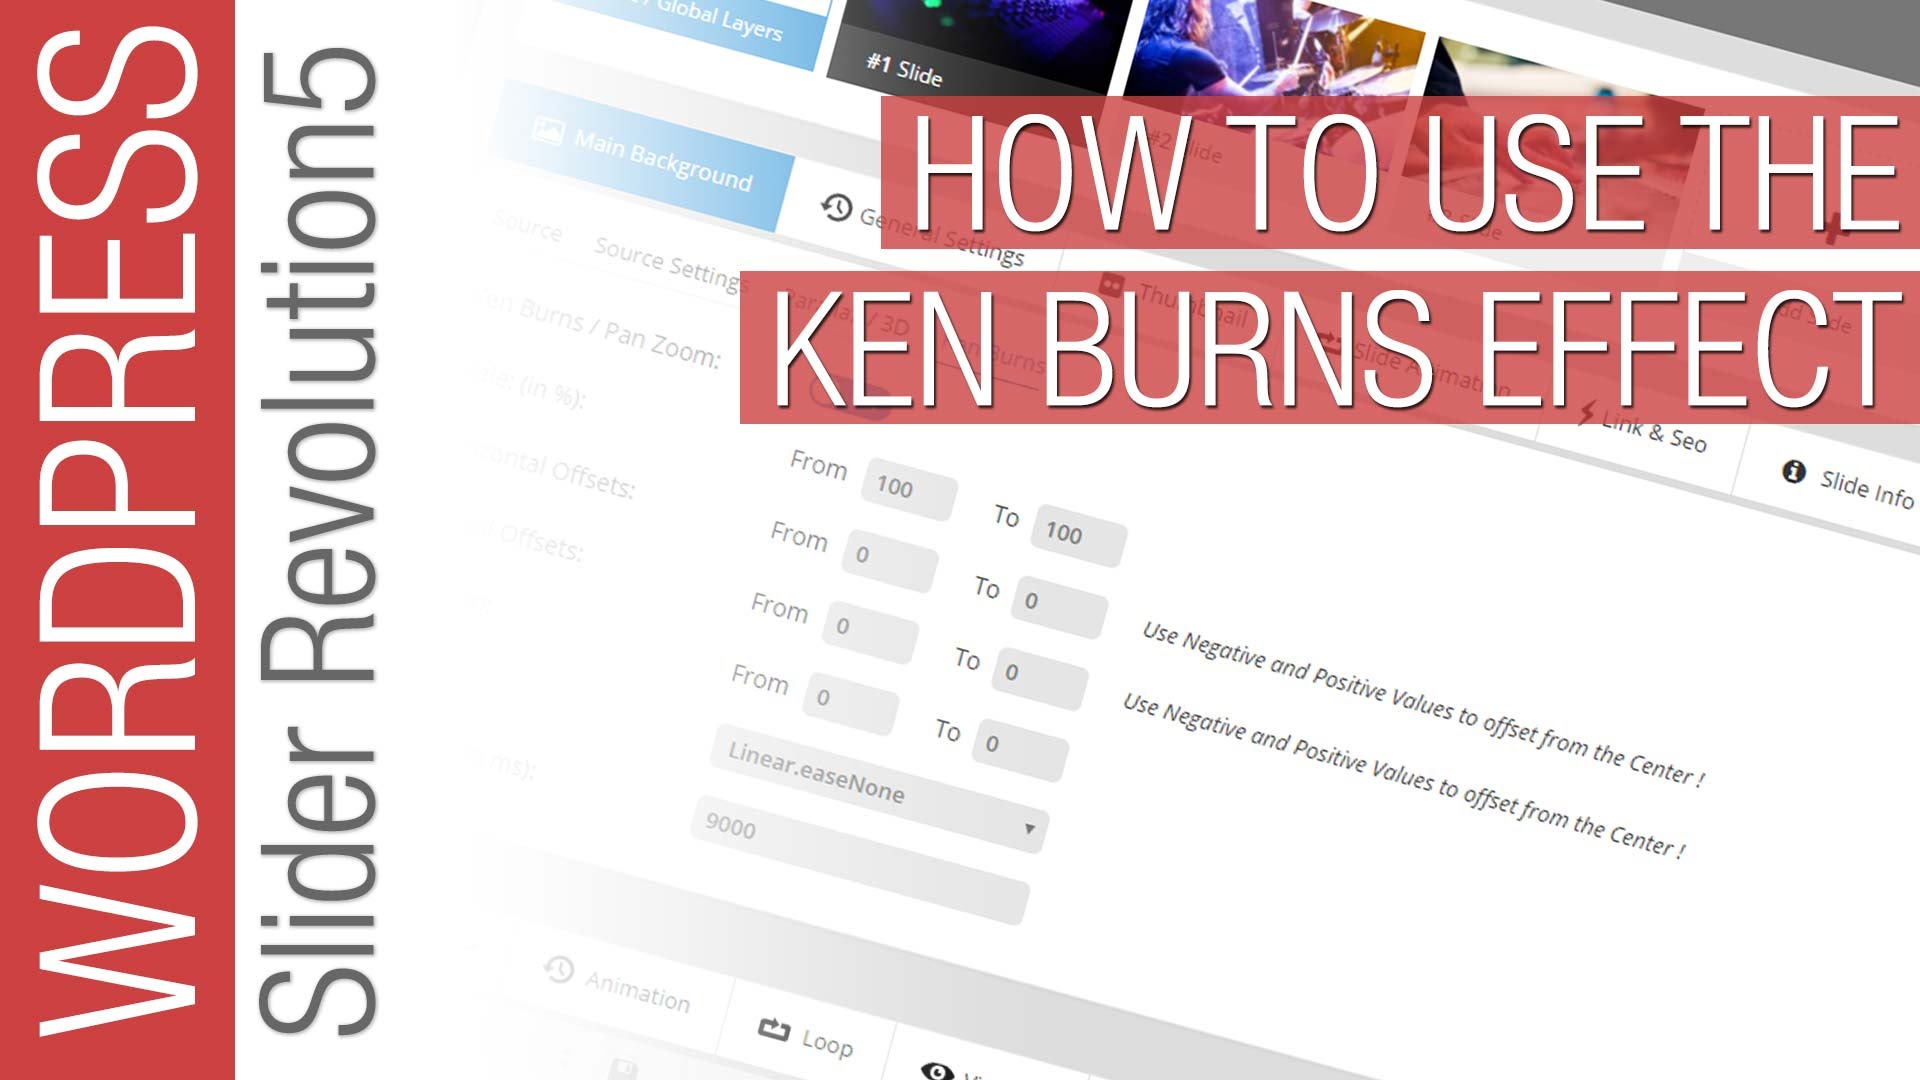 Slider Revolution 5 for WordPress Tutorial – Ken Burns Effect